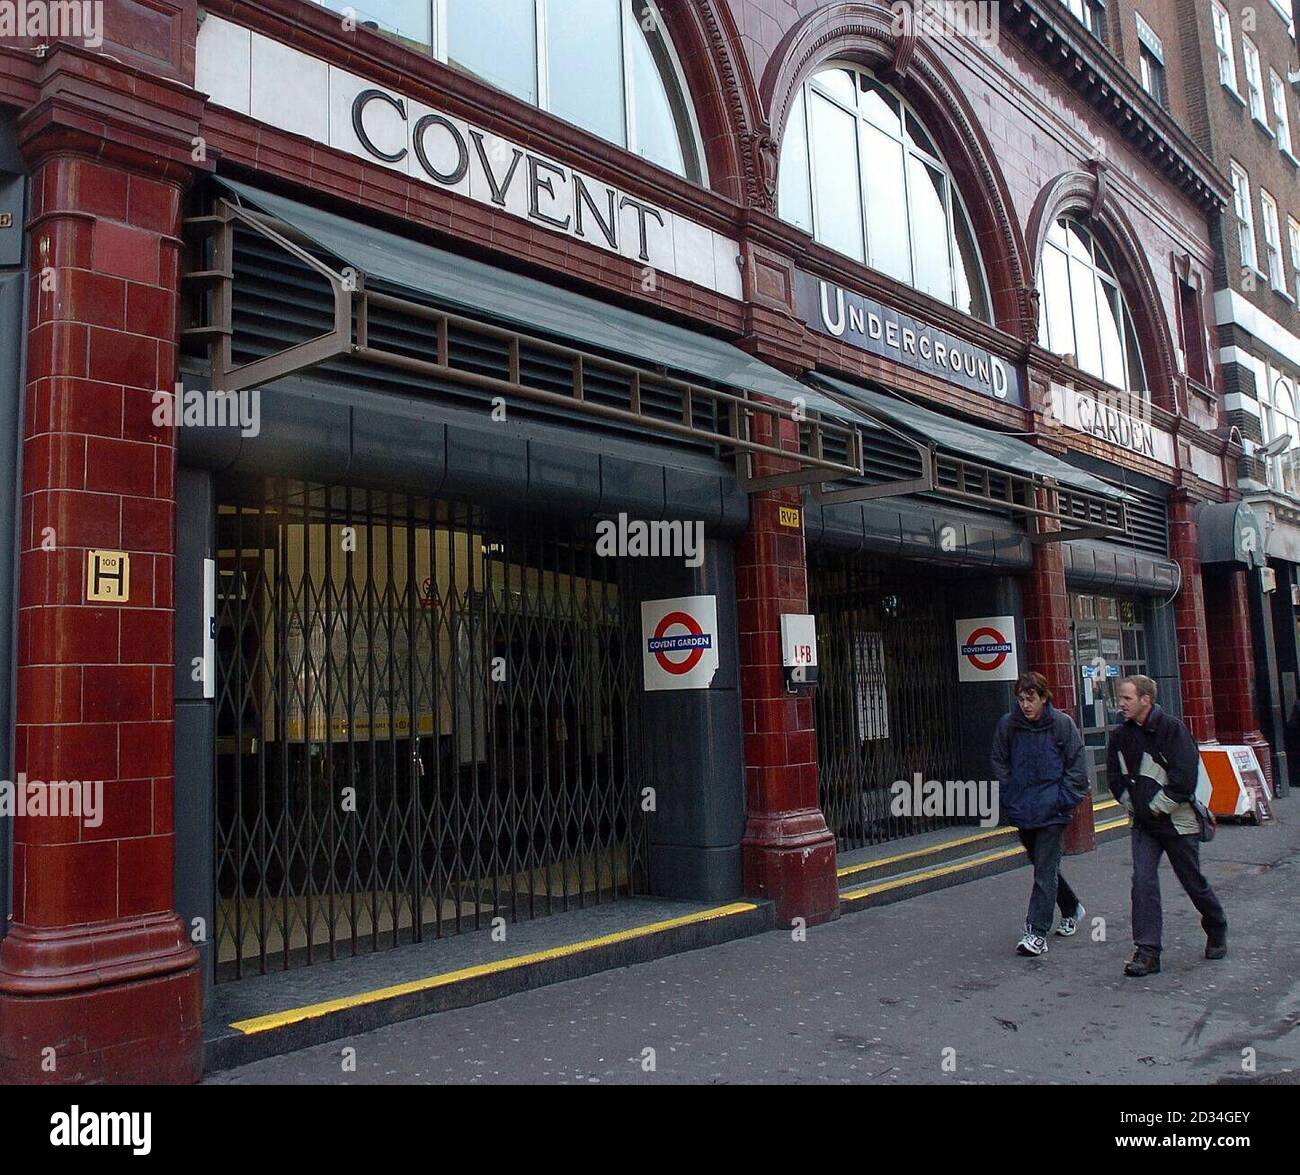 Der Londoner U-Bahnhof Covent Garden London ist am Montag, den 9. Januar 2006, wegen eines 24-stündigen Streiks von Mitgliedern der RMT-Gewerkschaft für Pendler geschlossen. Siehe PA Story INDUSTRY Tube. DRÜCKEN Sie VERBANDSFOTO. Bildnachweis sollte lauten: Michael Stephens / PA. Stockfoto